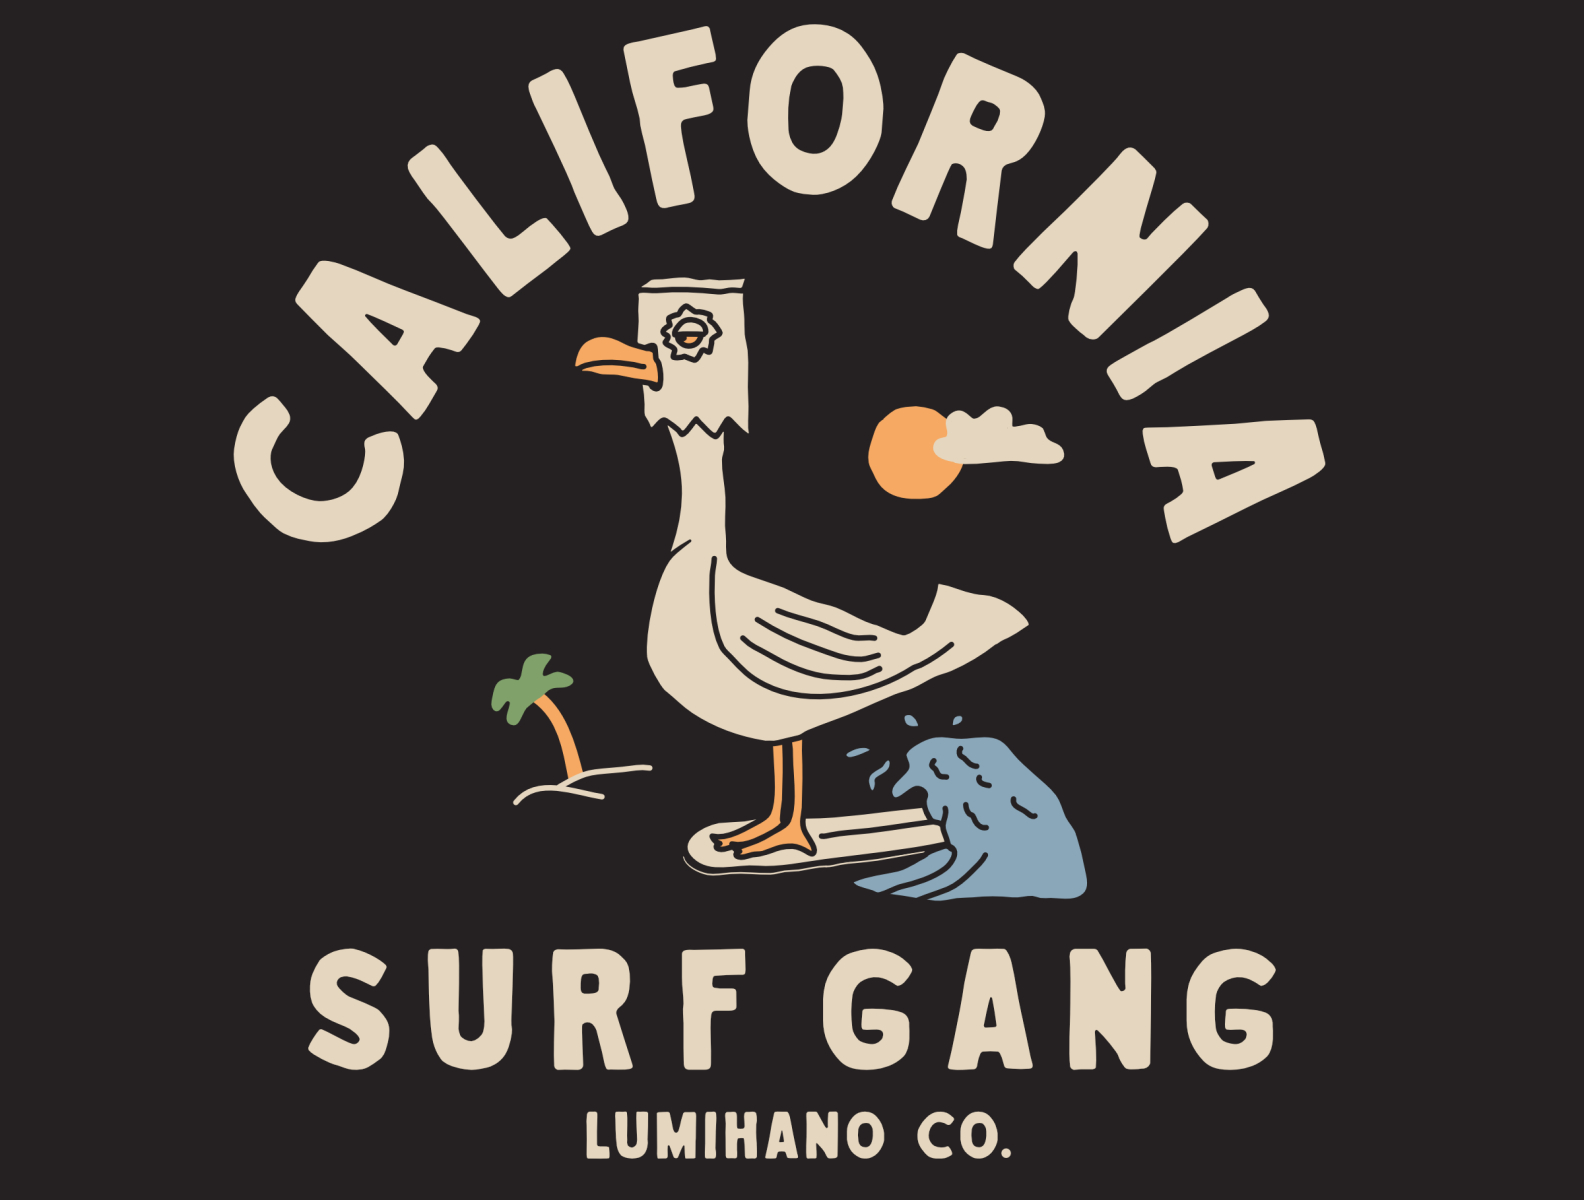 CALIFORNIA SURF GANG by lumihano on Dribbble